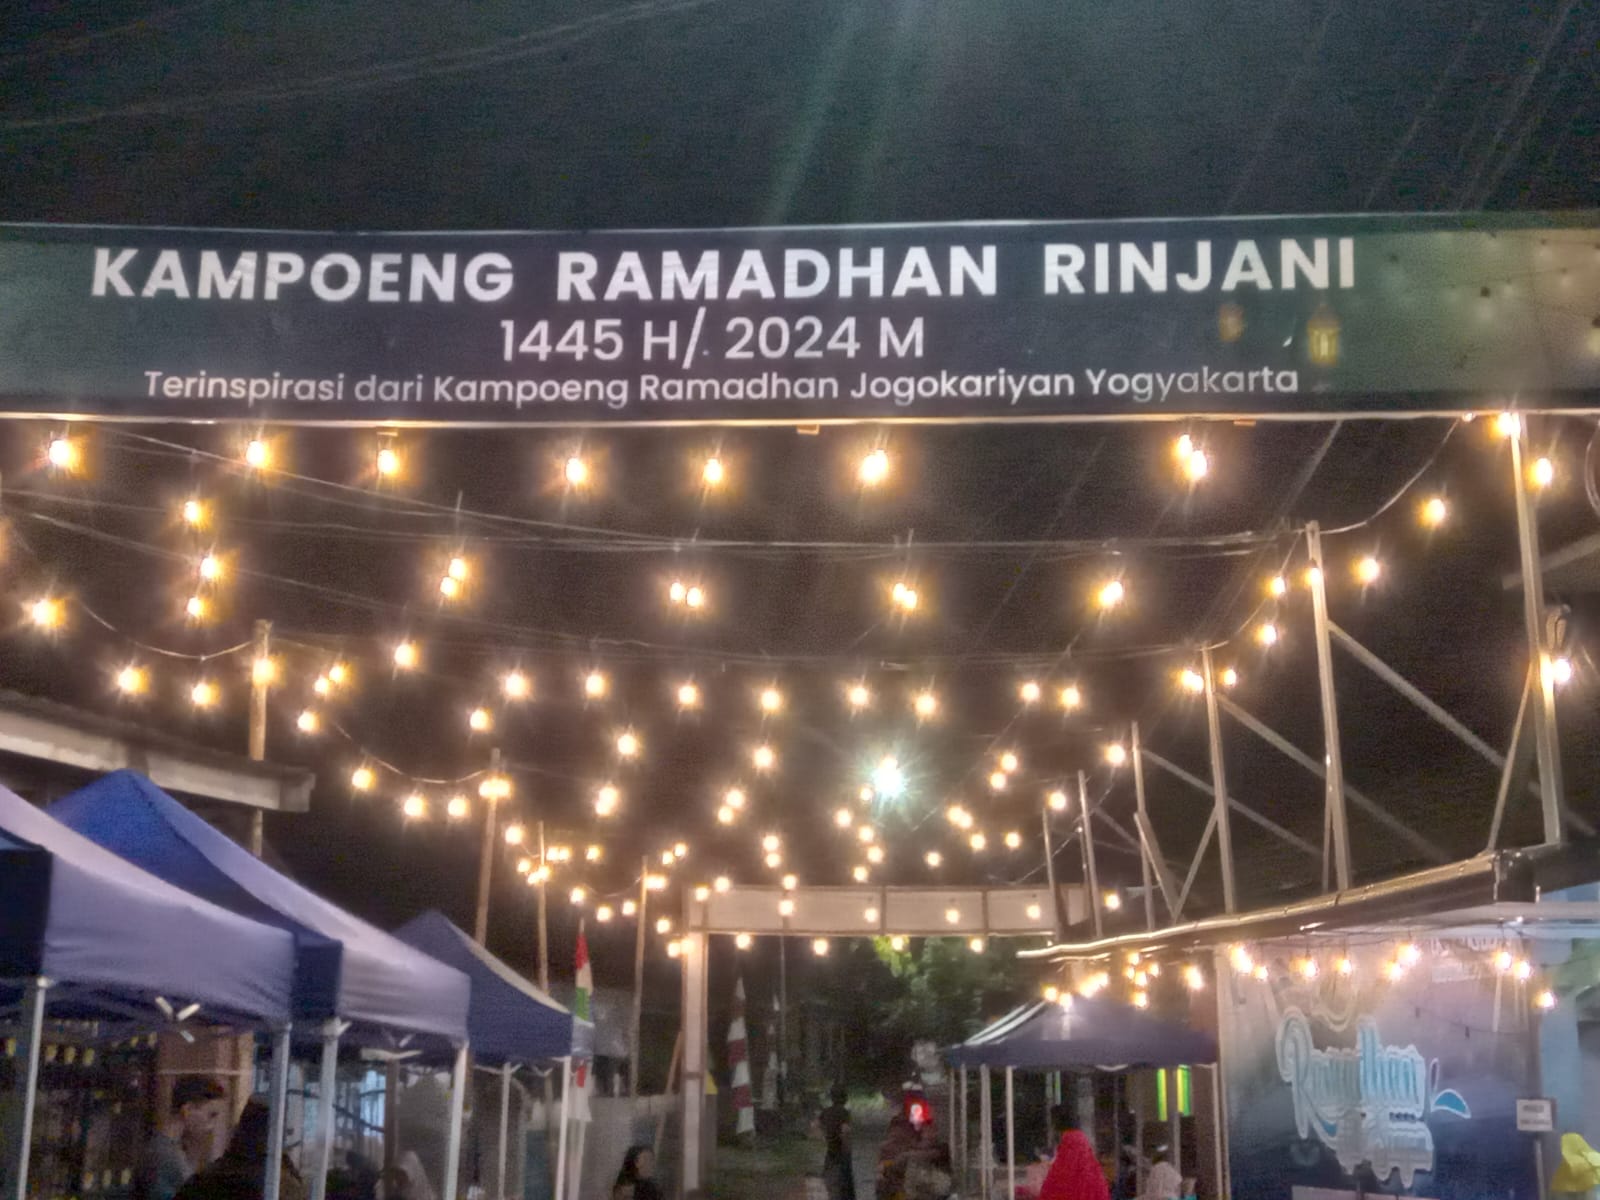 Terinspirasi dari Yogyakarta, Kampung Ramadhan Rinjani Sajikan Suasana Religius dan Kearifan Lokal